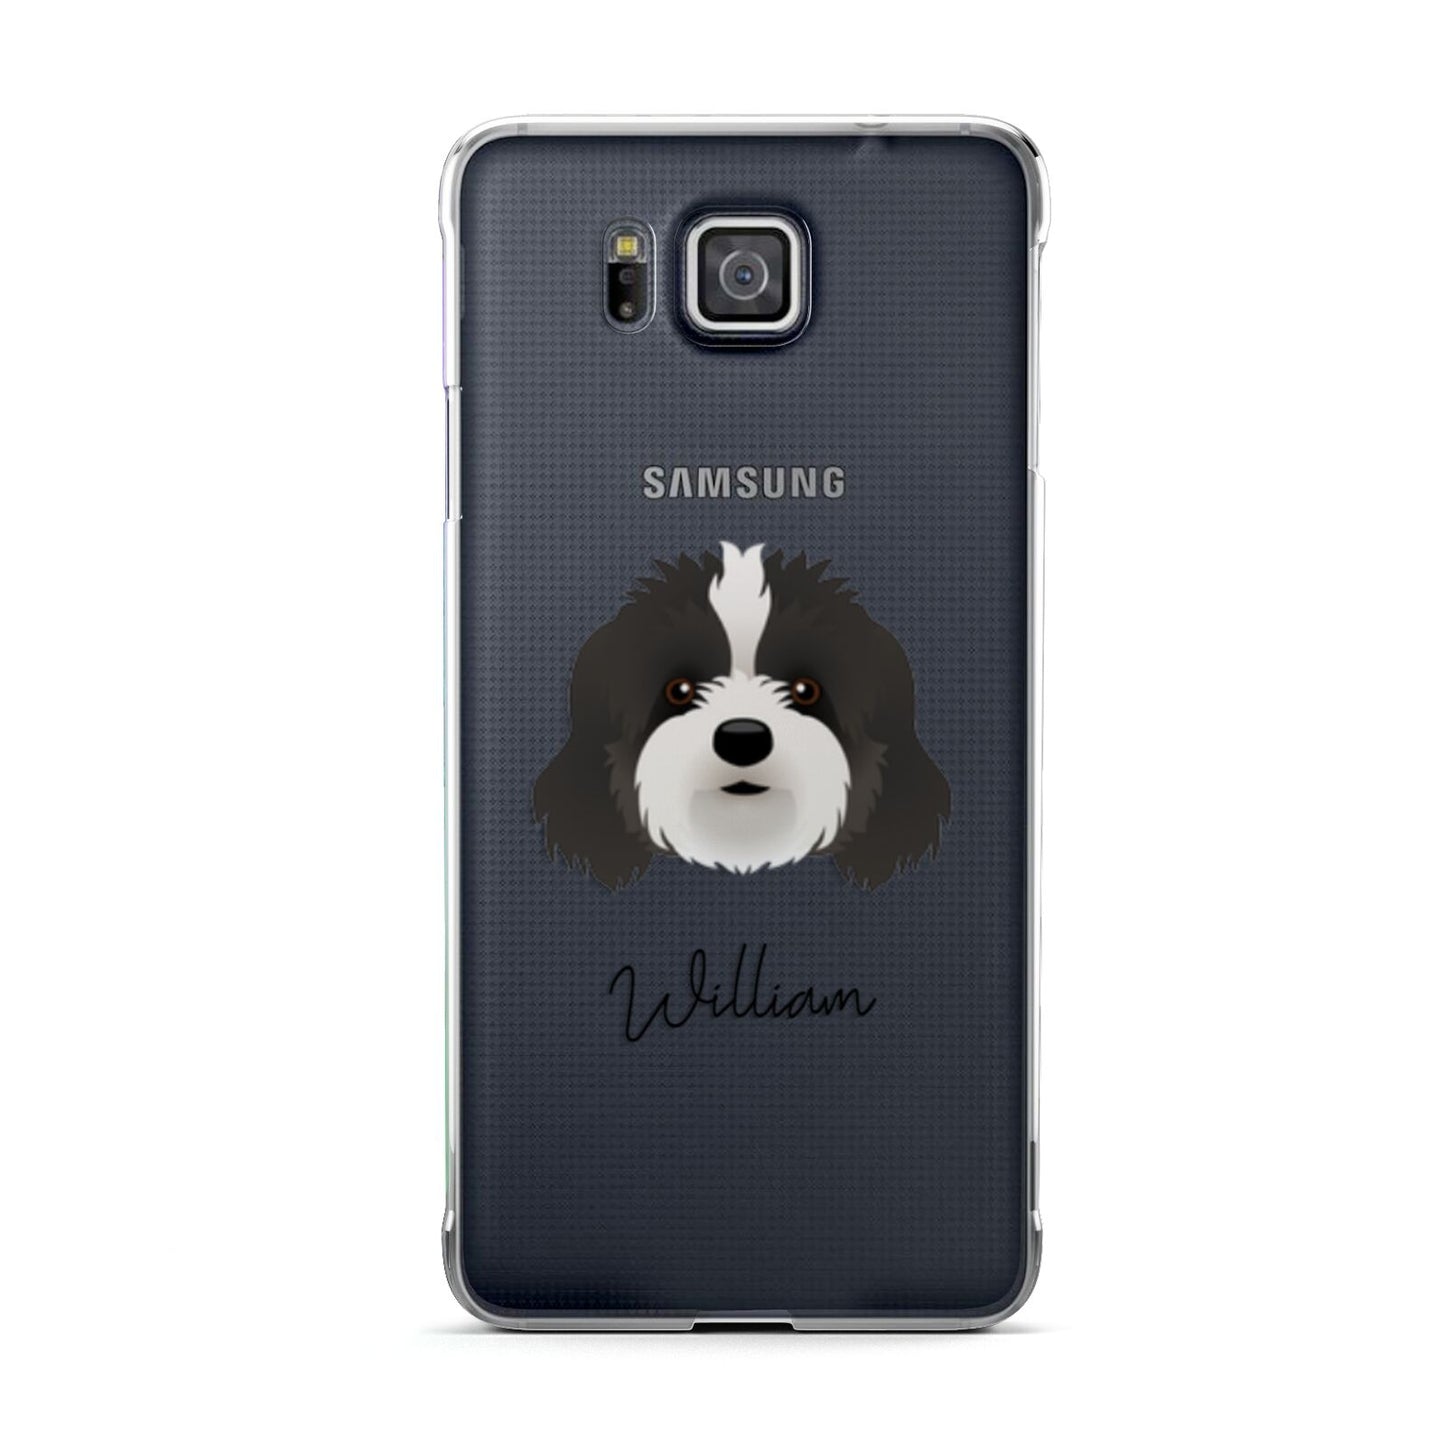 Cavapoo Personalised Samsung Galaxy Alpha Case